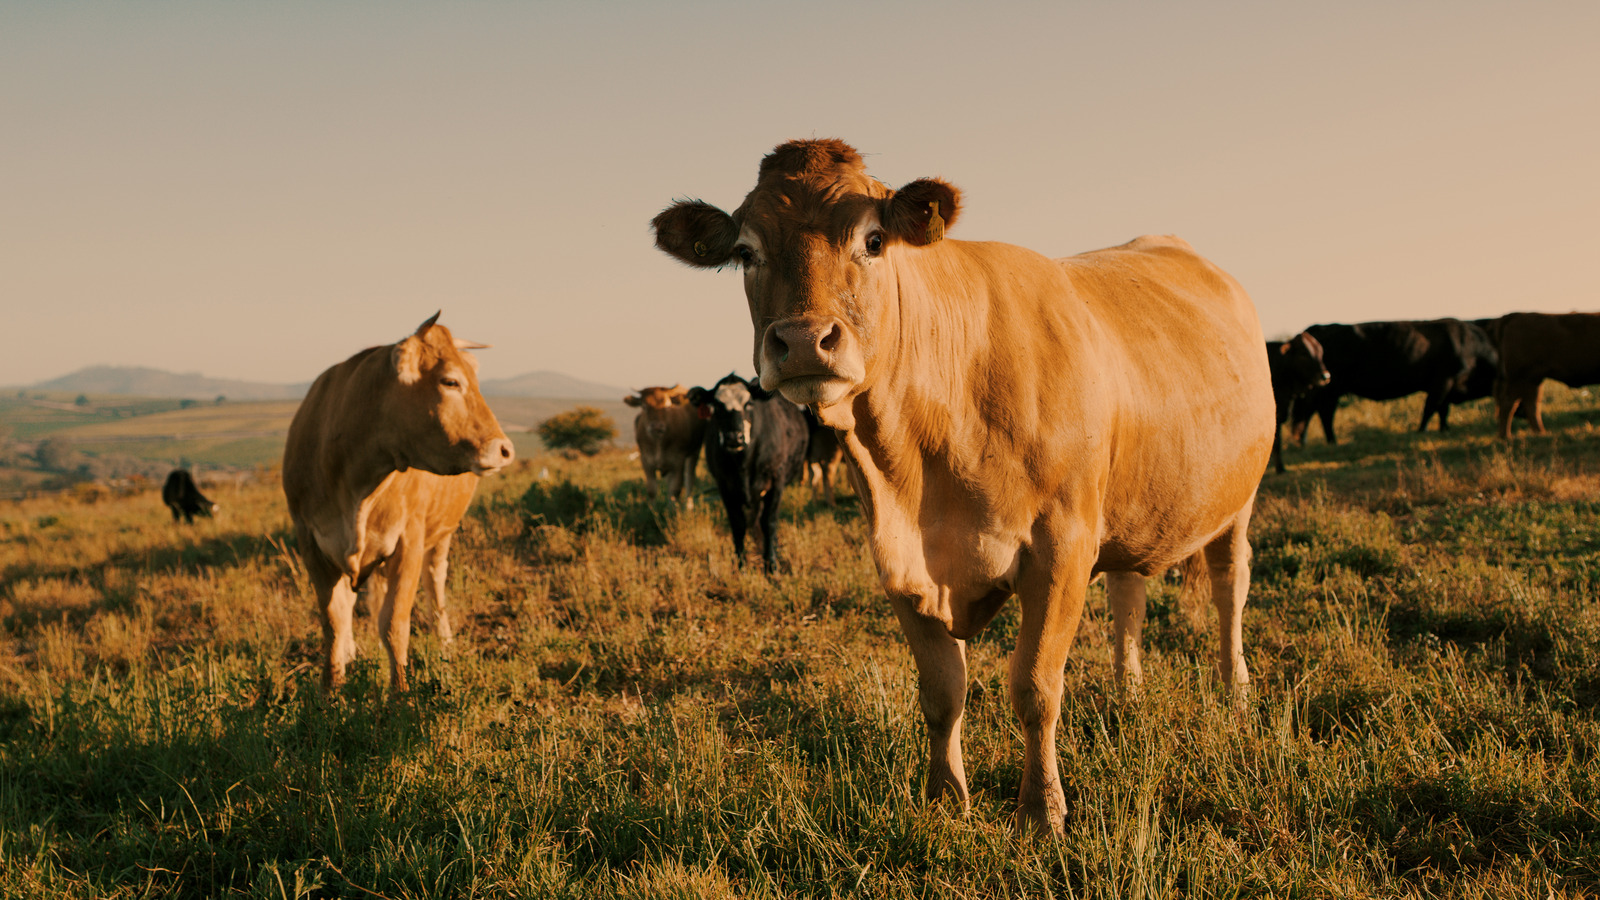 الفرق في النكهة بين لحم البقر الذي يتغذى على العشب ولحم البقر الذي يتغذى على الحبوب